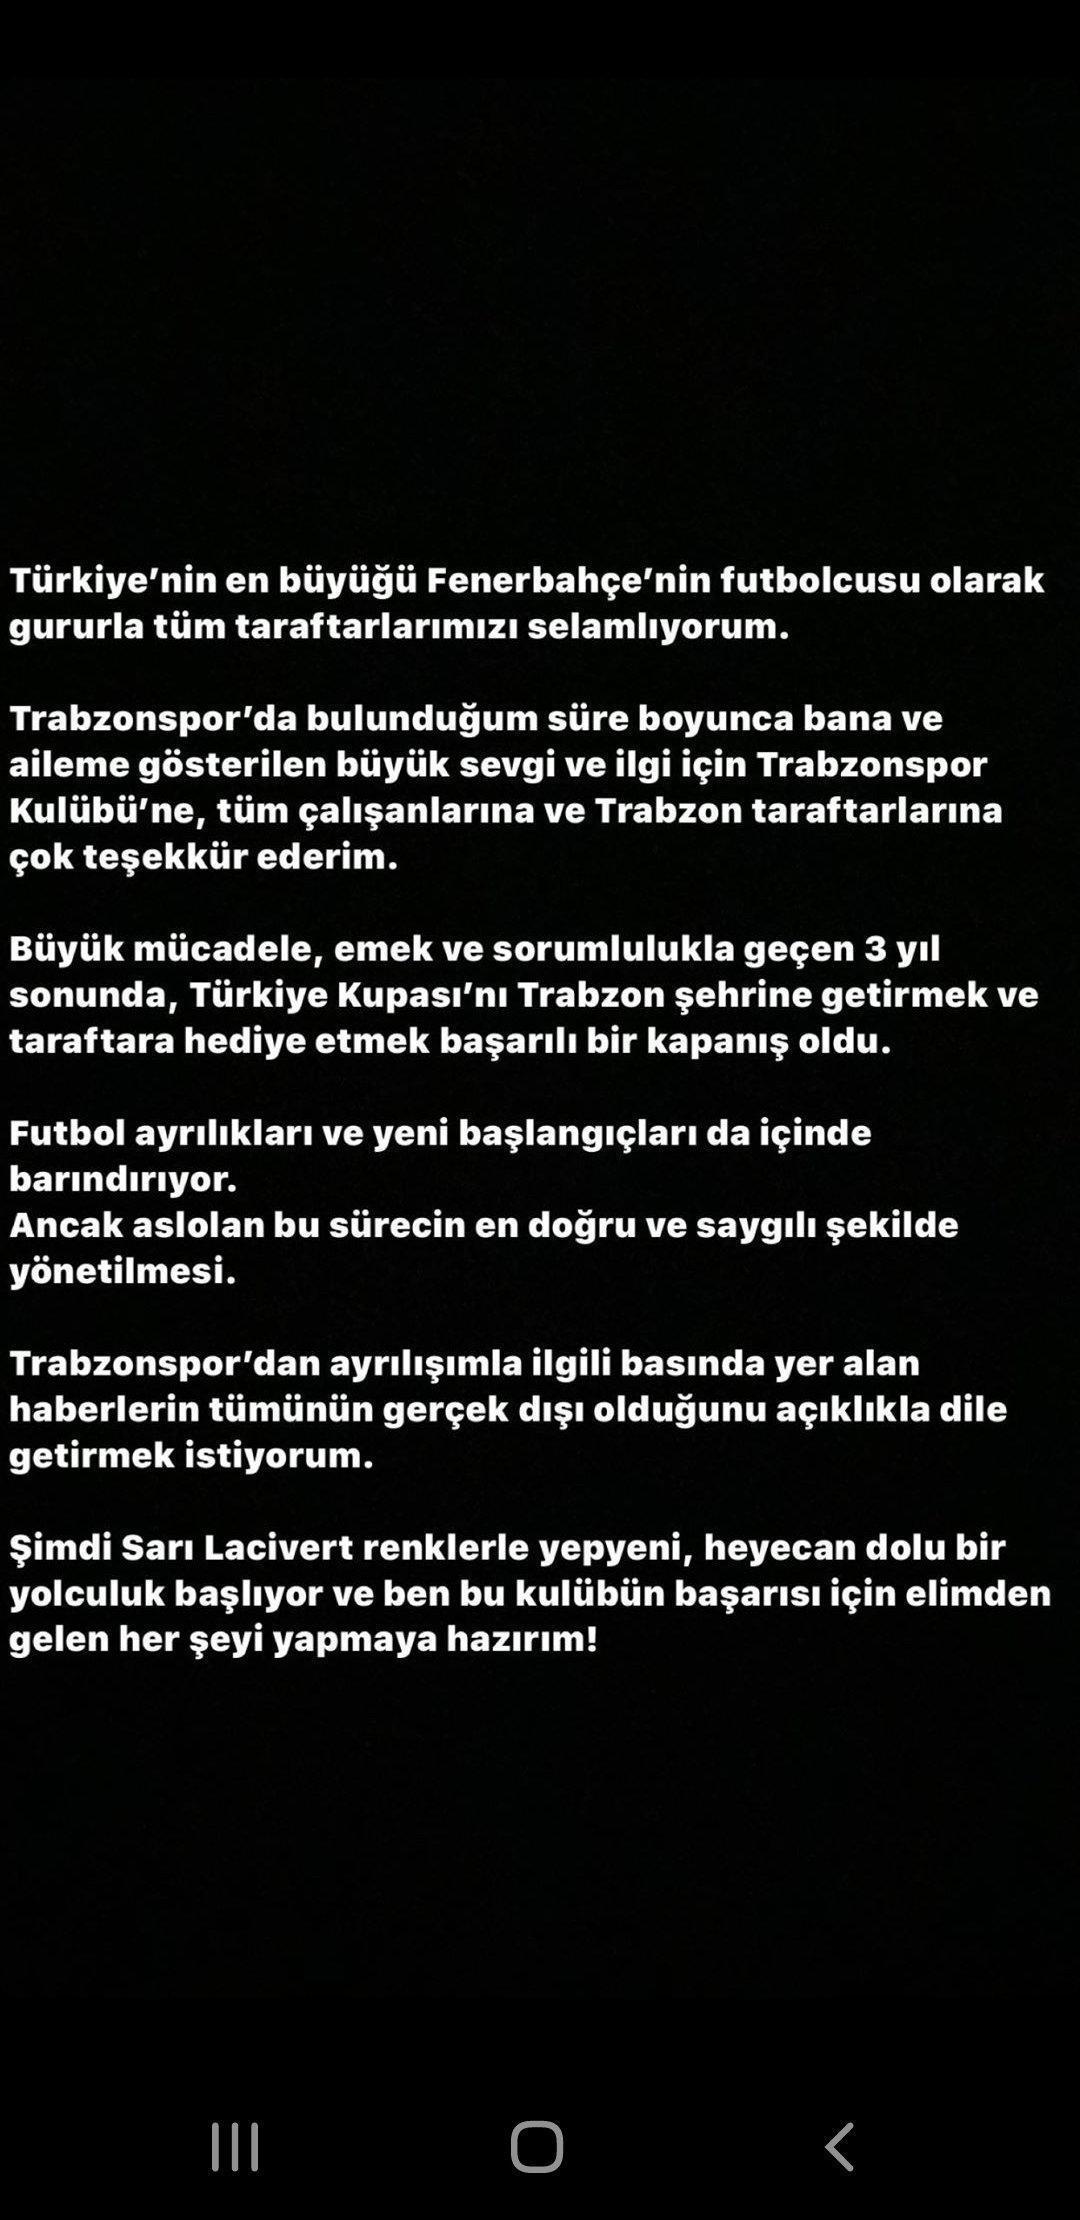 Jose Sosa: Türkiyenin en büyüğü Fenerbahçe